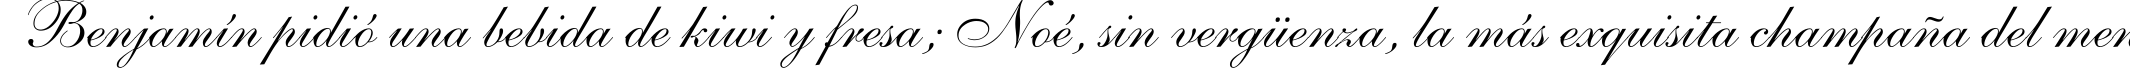 Пример написания шрифтом Allegro текста на испанском